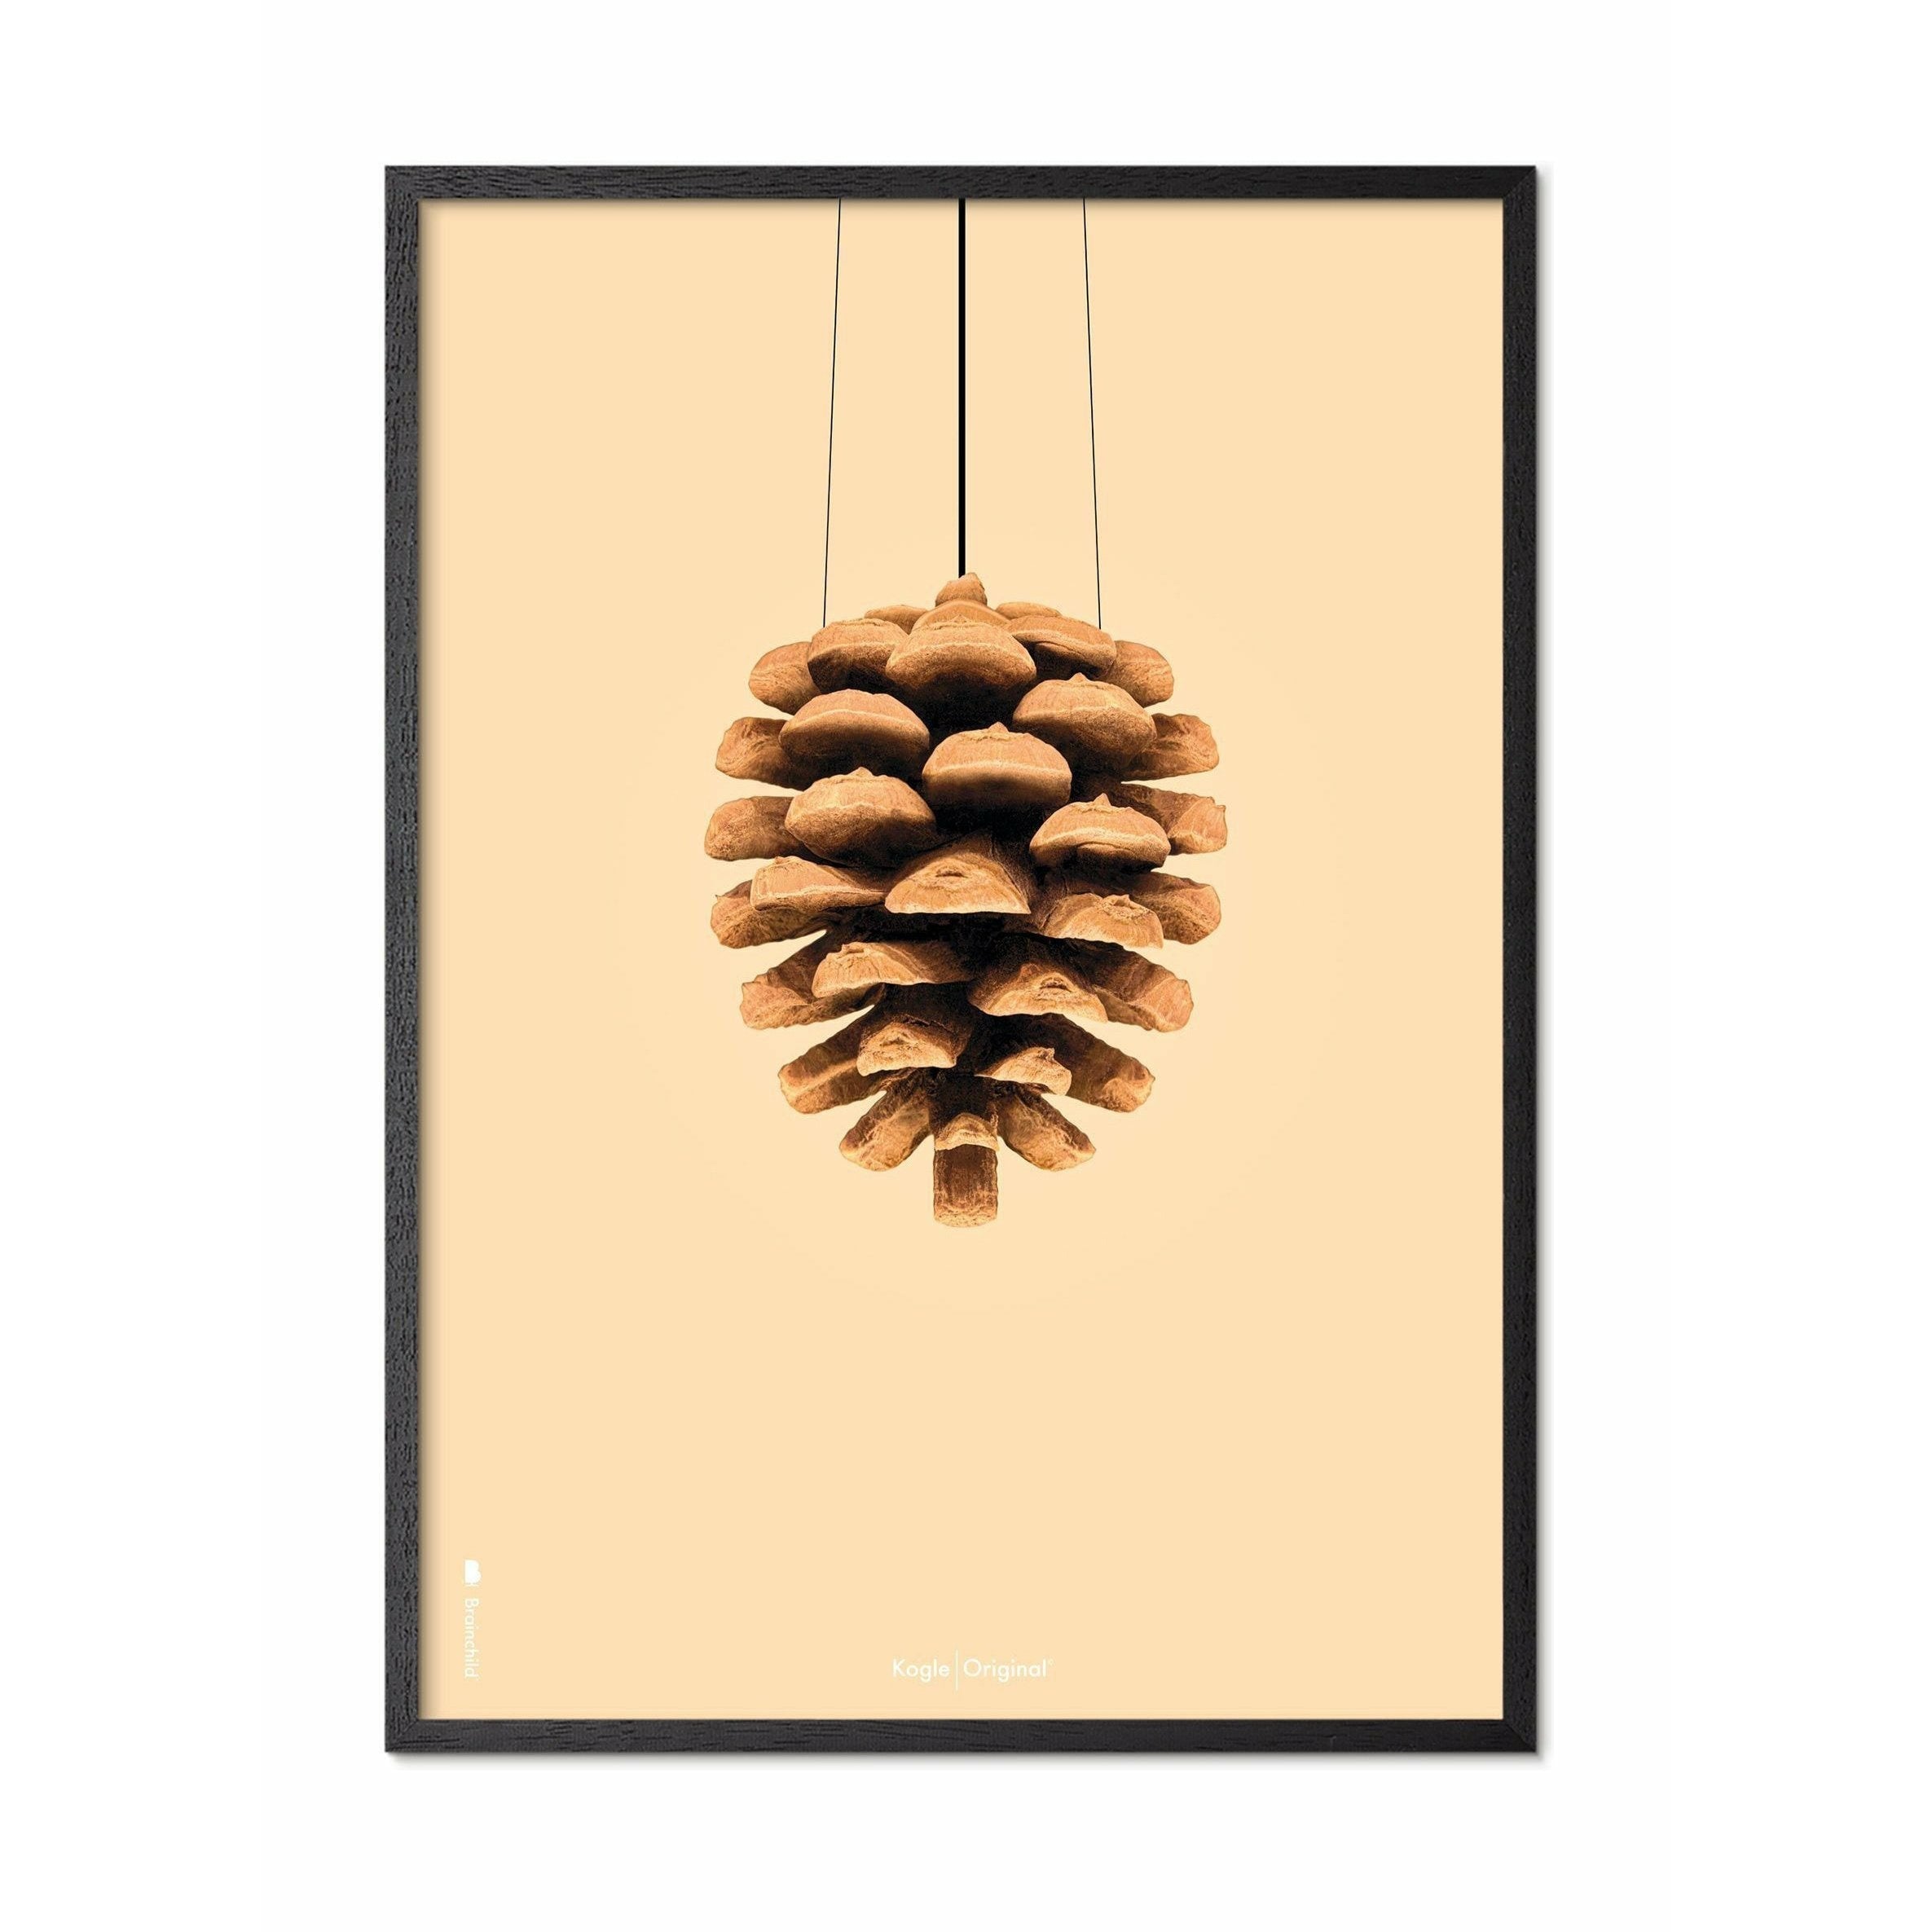 Pomysły Pine Sone Classic Plakat, rama w czarnym lakierowanym drewnie 70x100 cm, tło w kolorze piasku